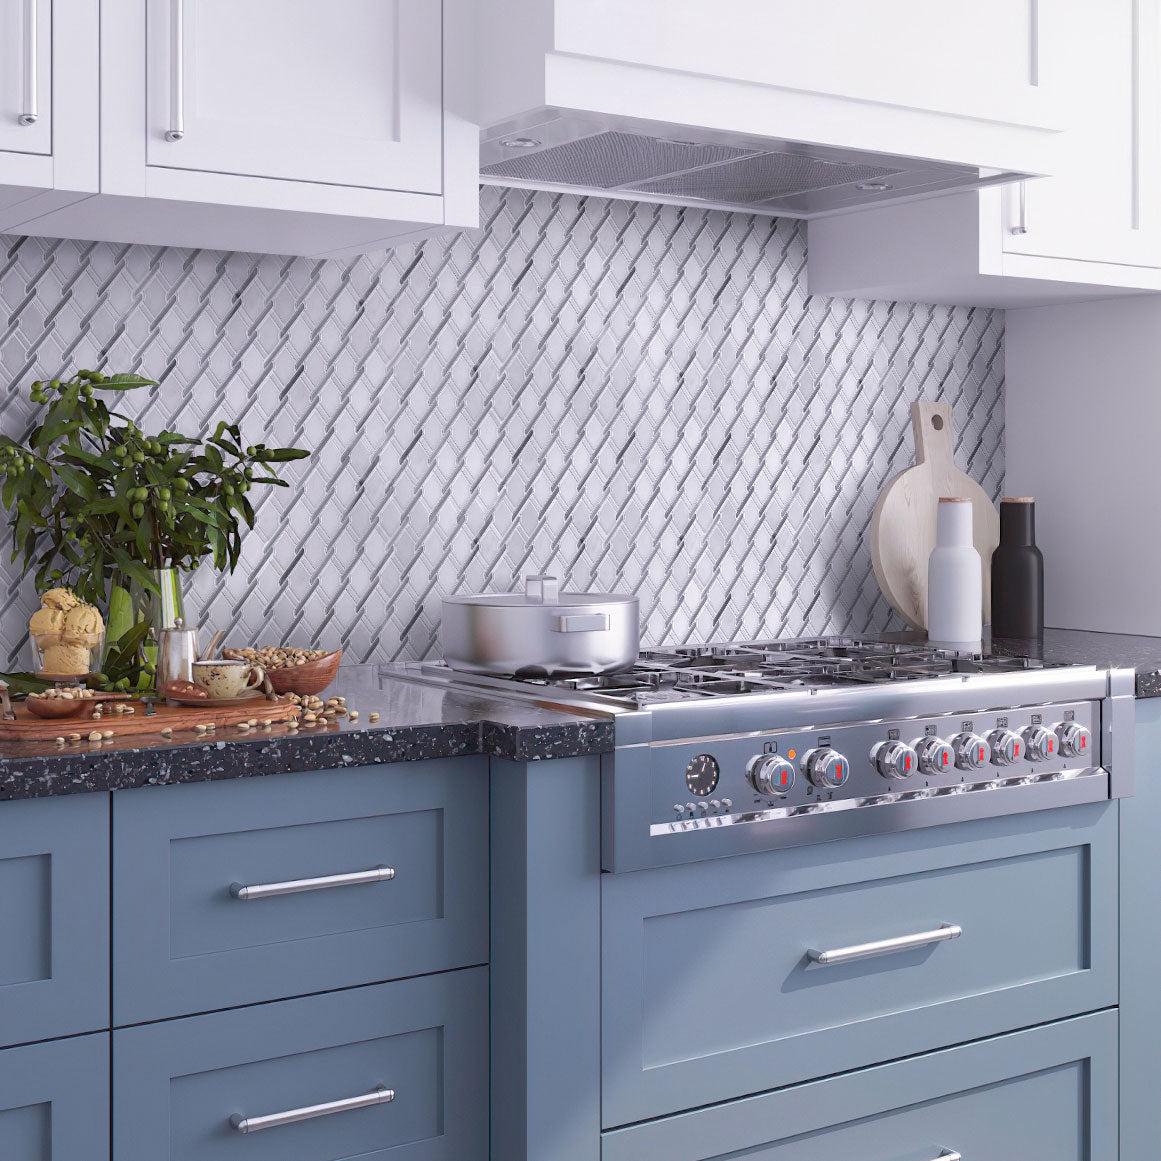 White and Blue Kitchen With Italiano Bardiglio & Eastern White Marble Mosaic Tile Backsplash